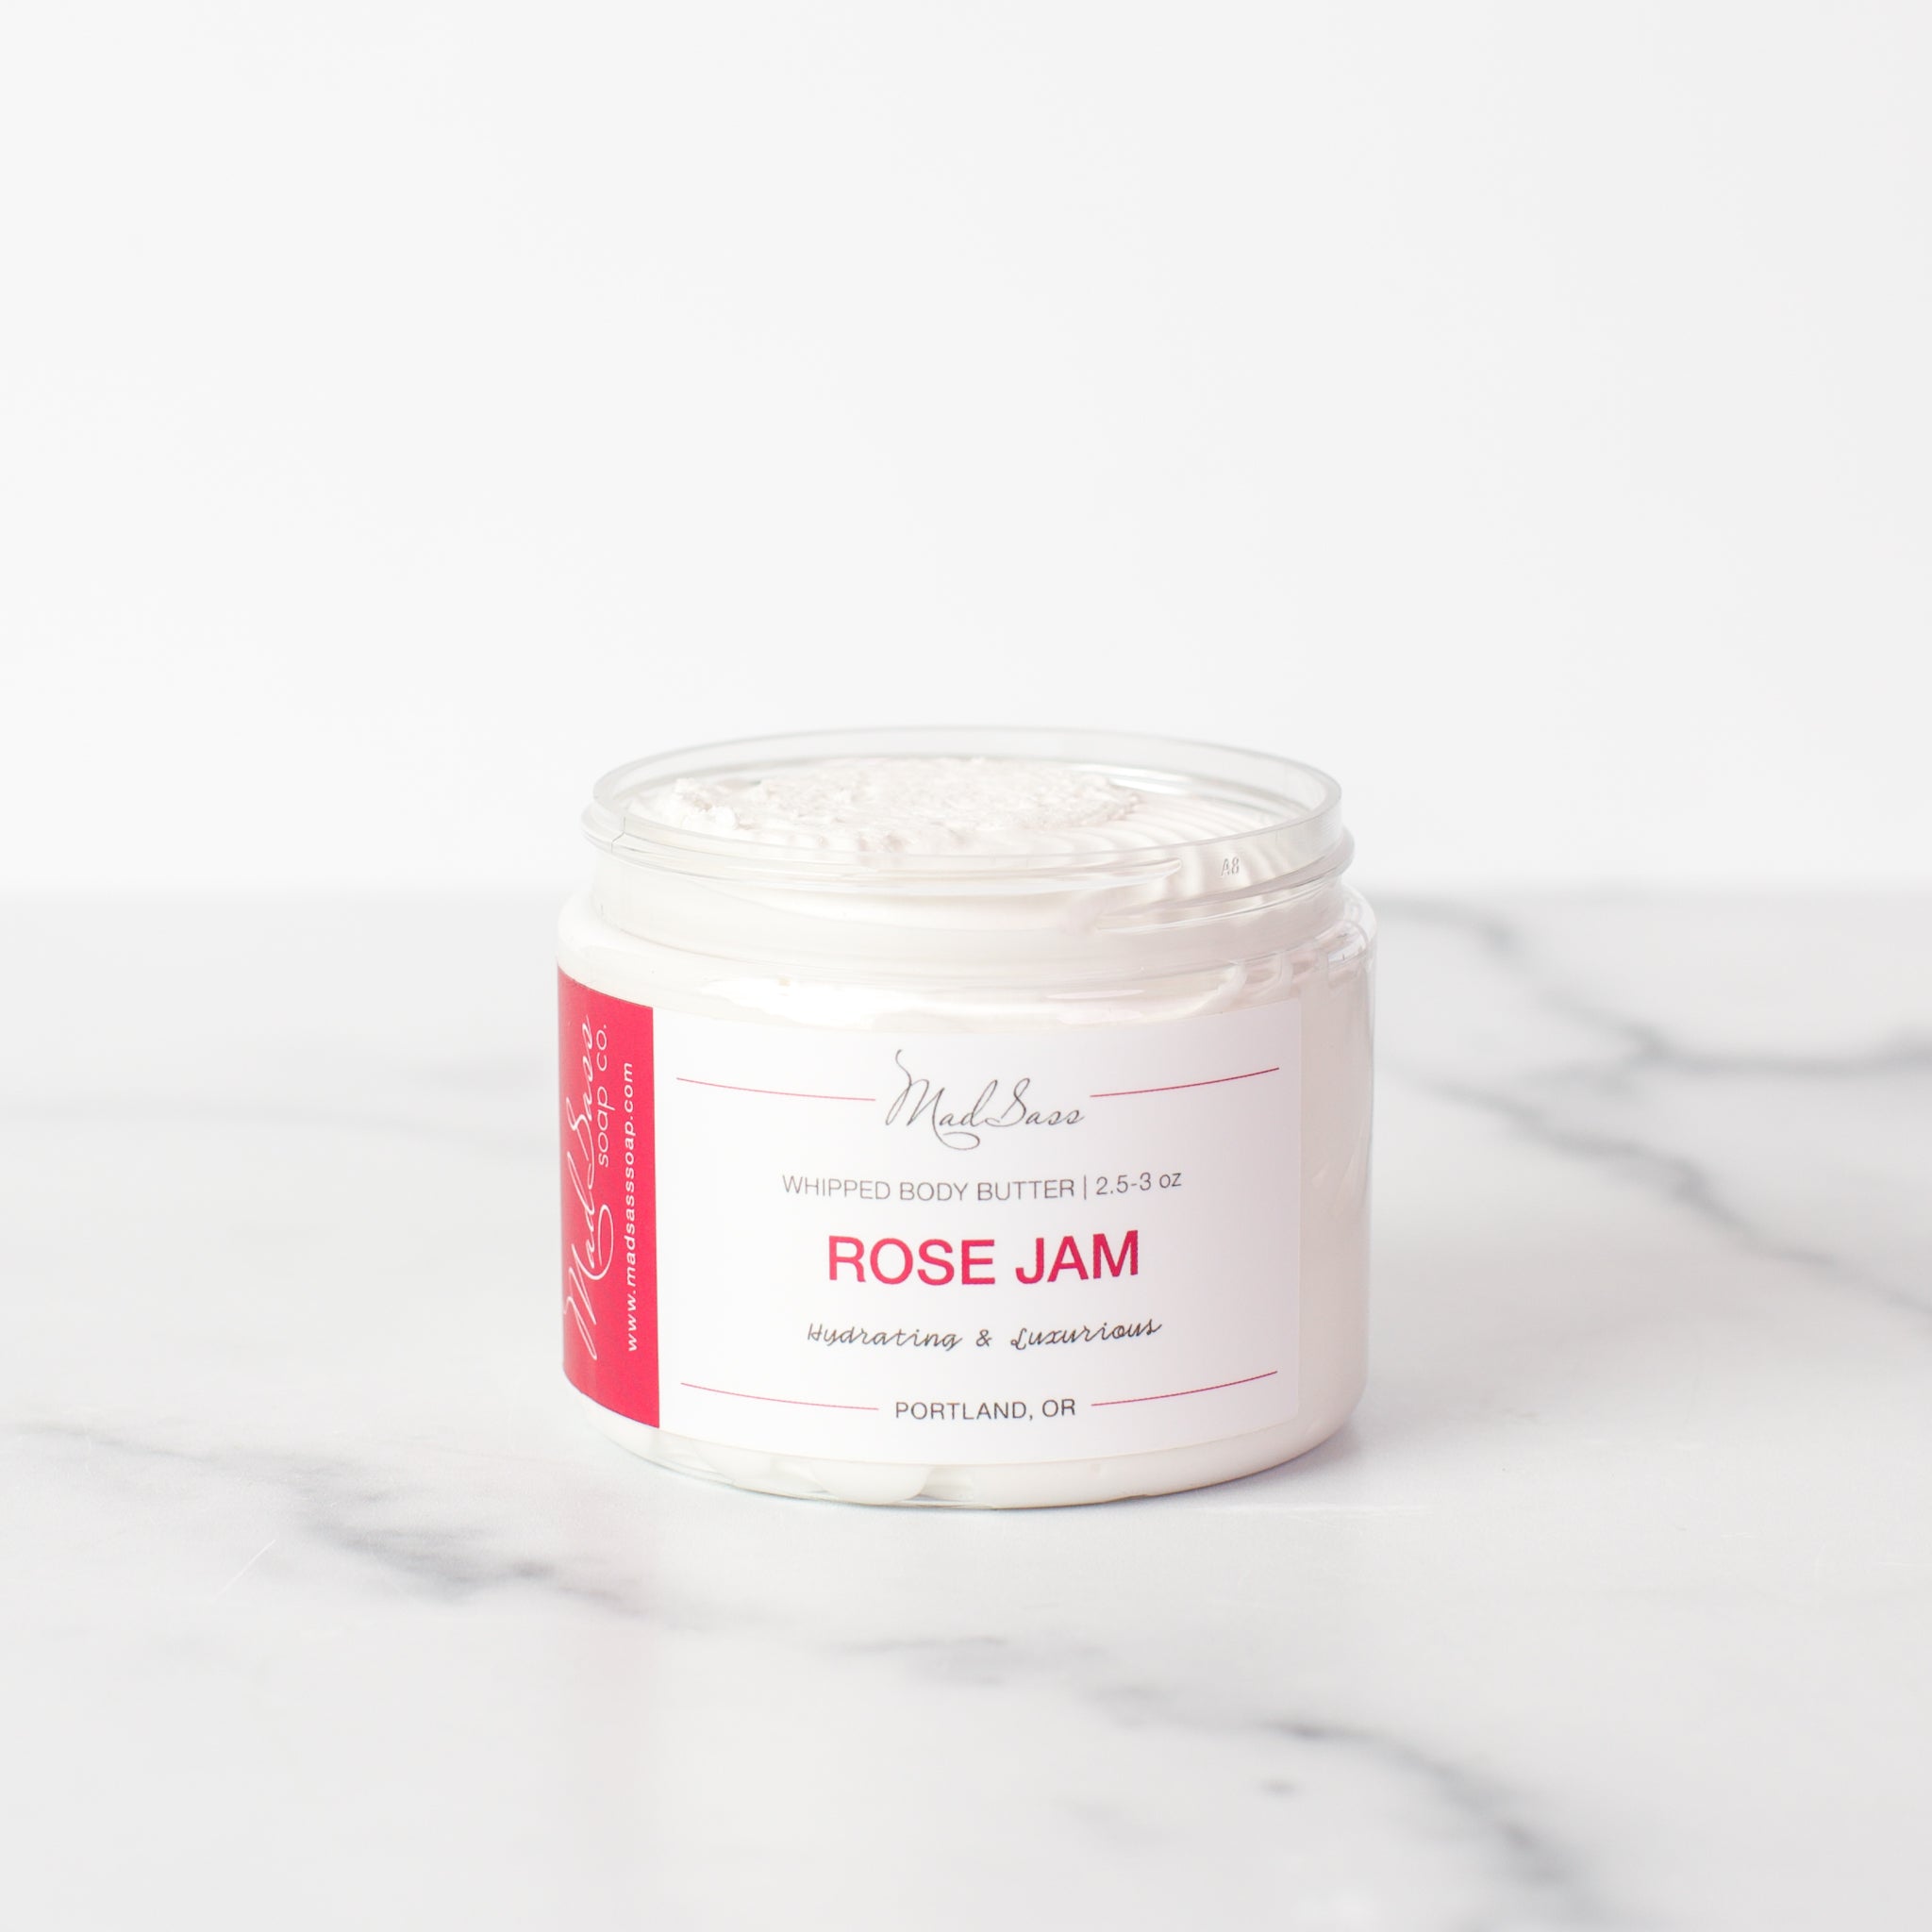 Rose Jam - Body Butter